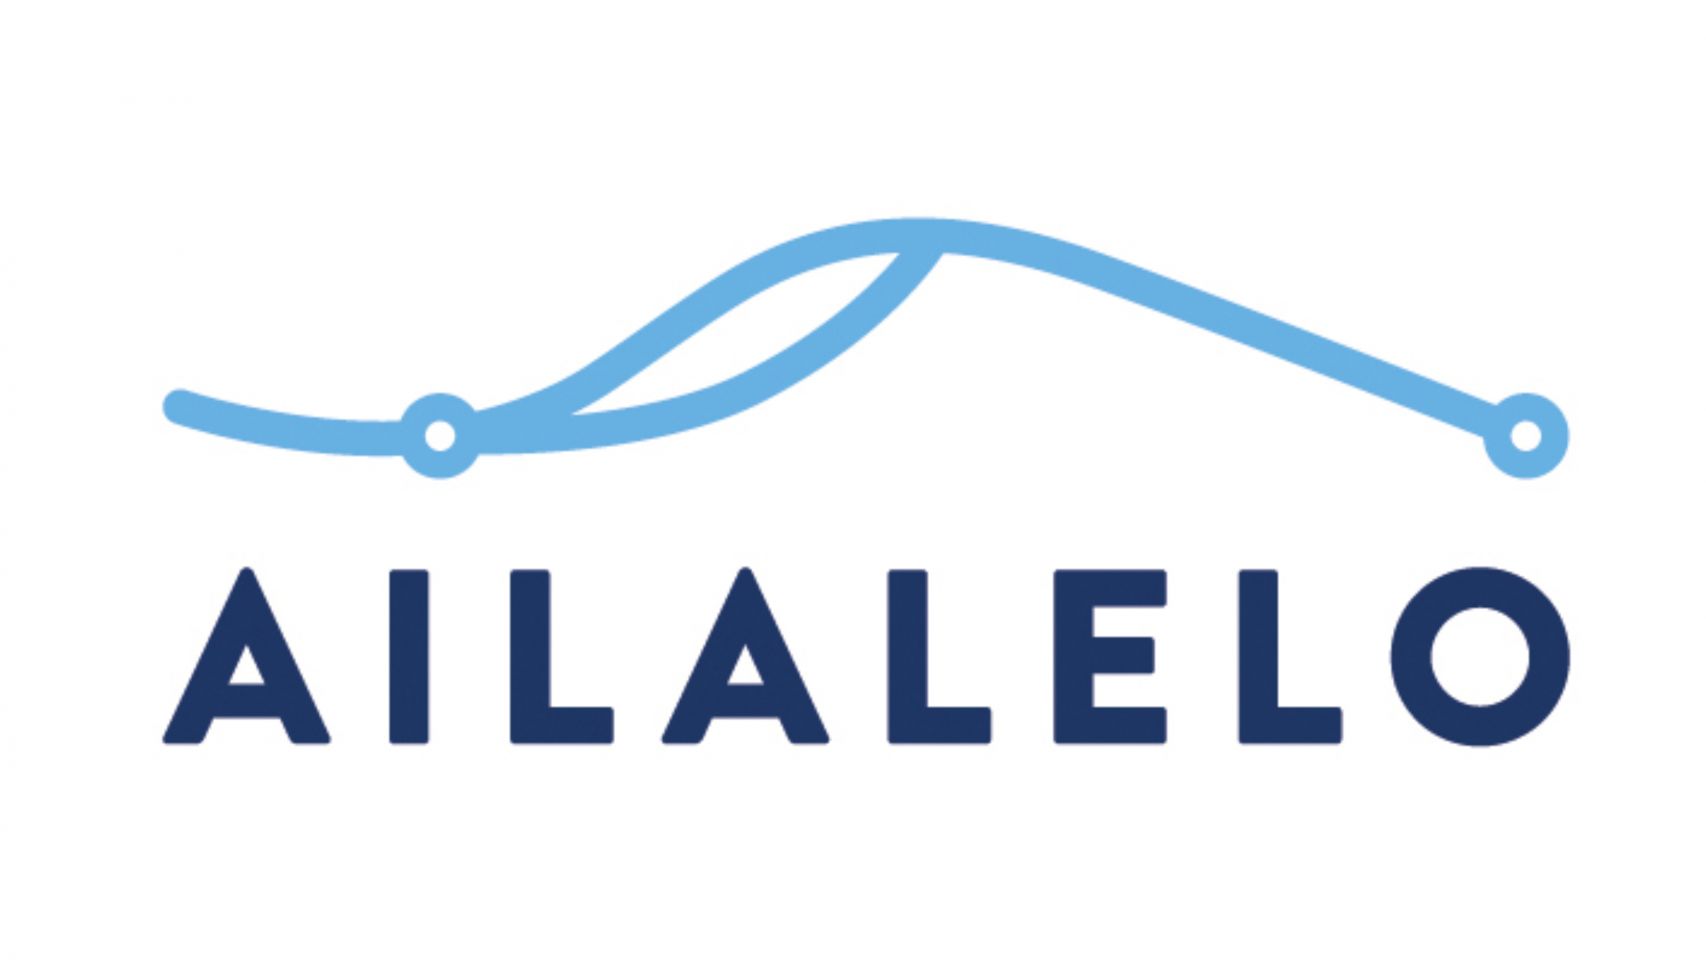 El logotipo de la productora coruñesa Ailalelo.